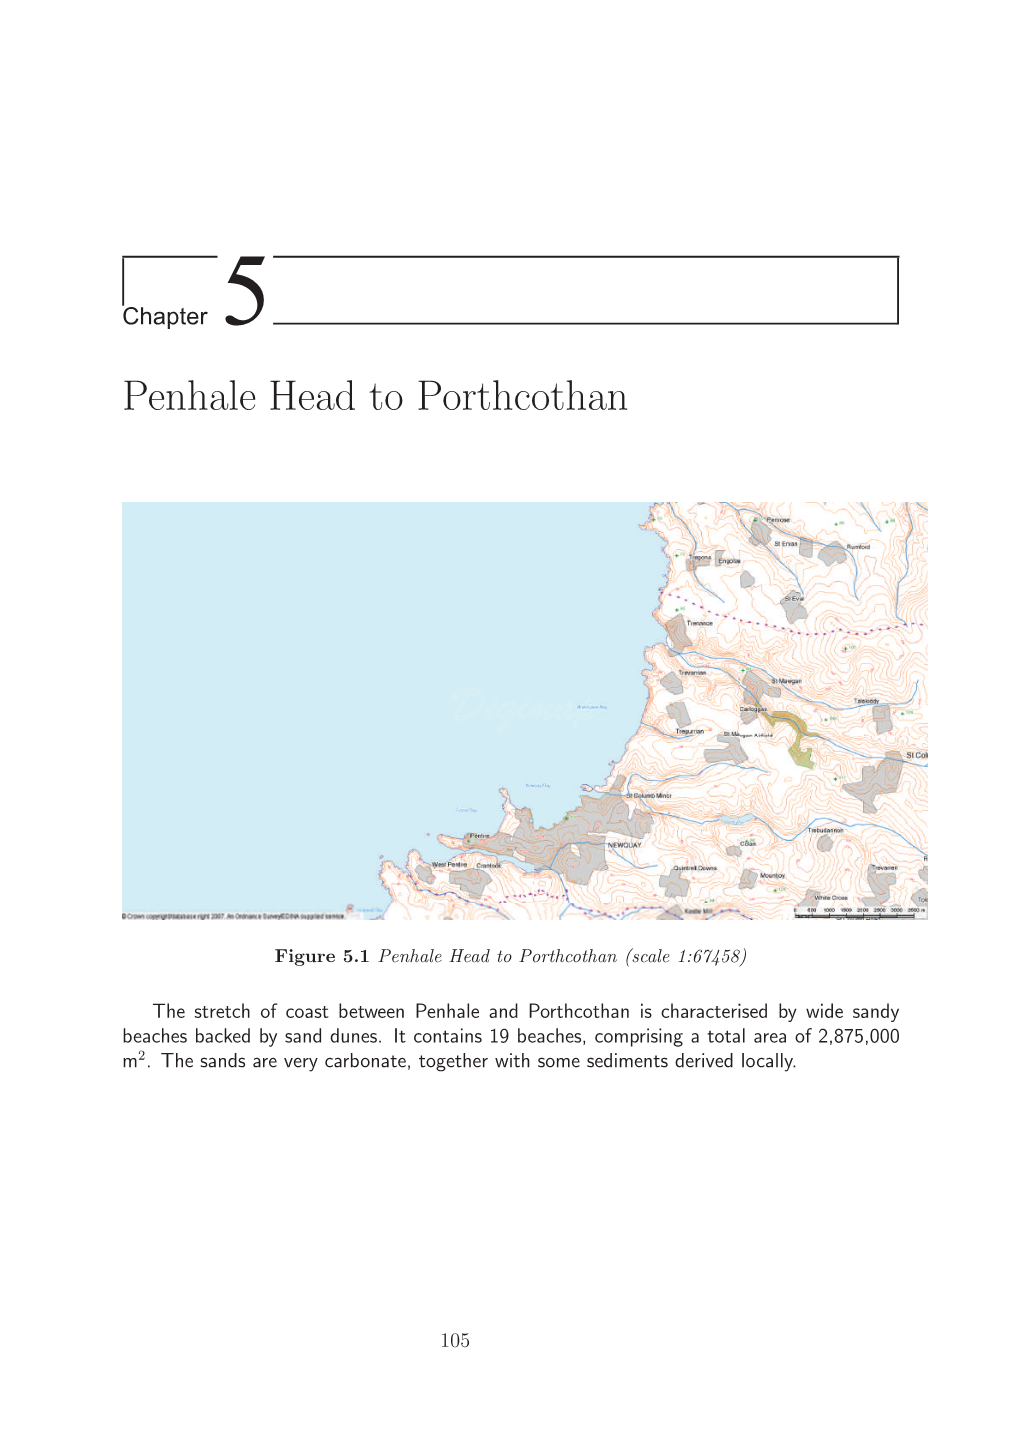 Penhale Head to Porthcothan